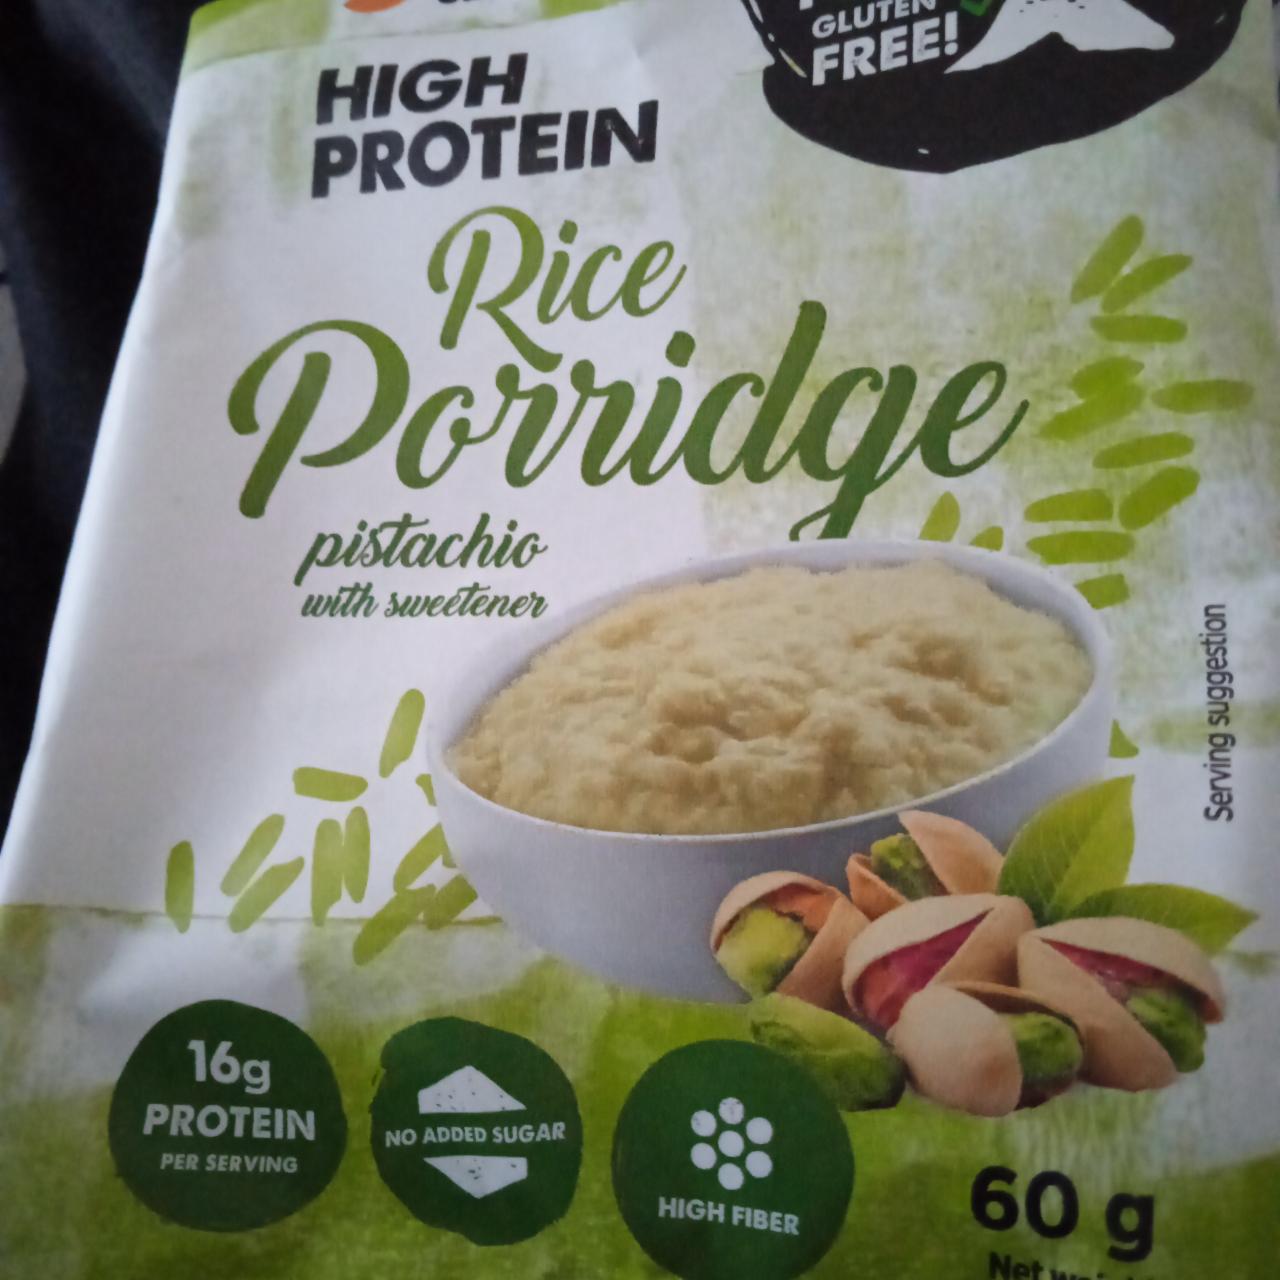 Képek - Rice porridge pistachio Forpro